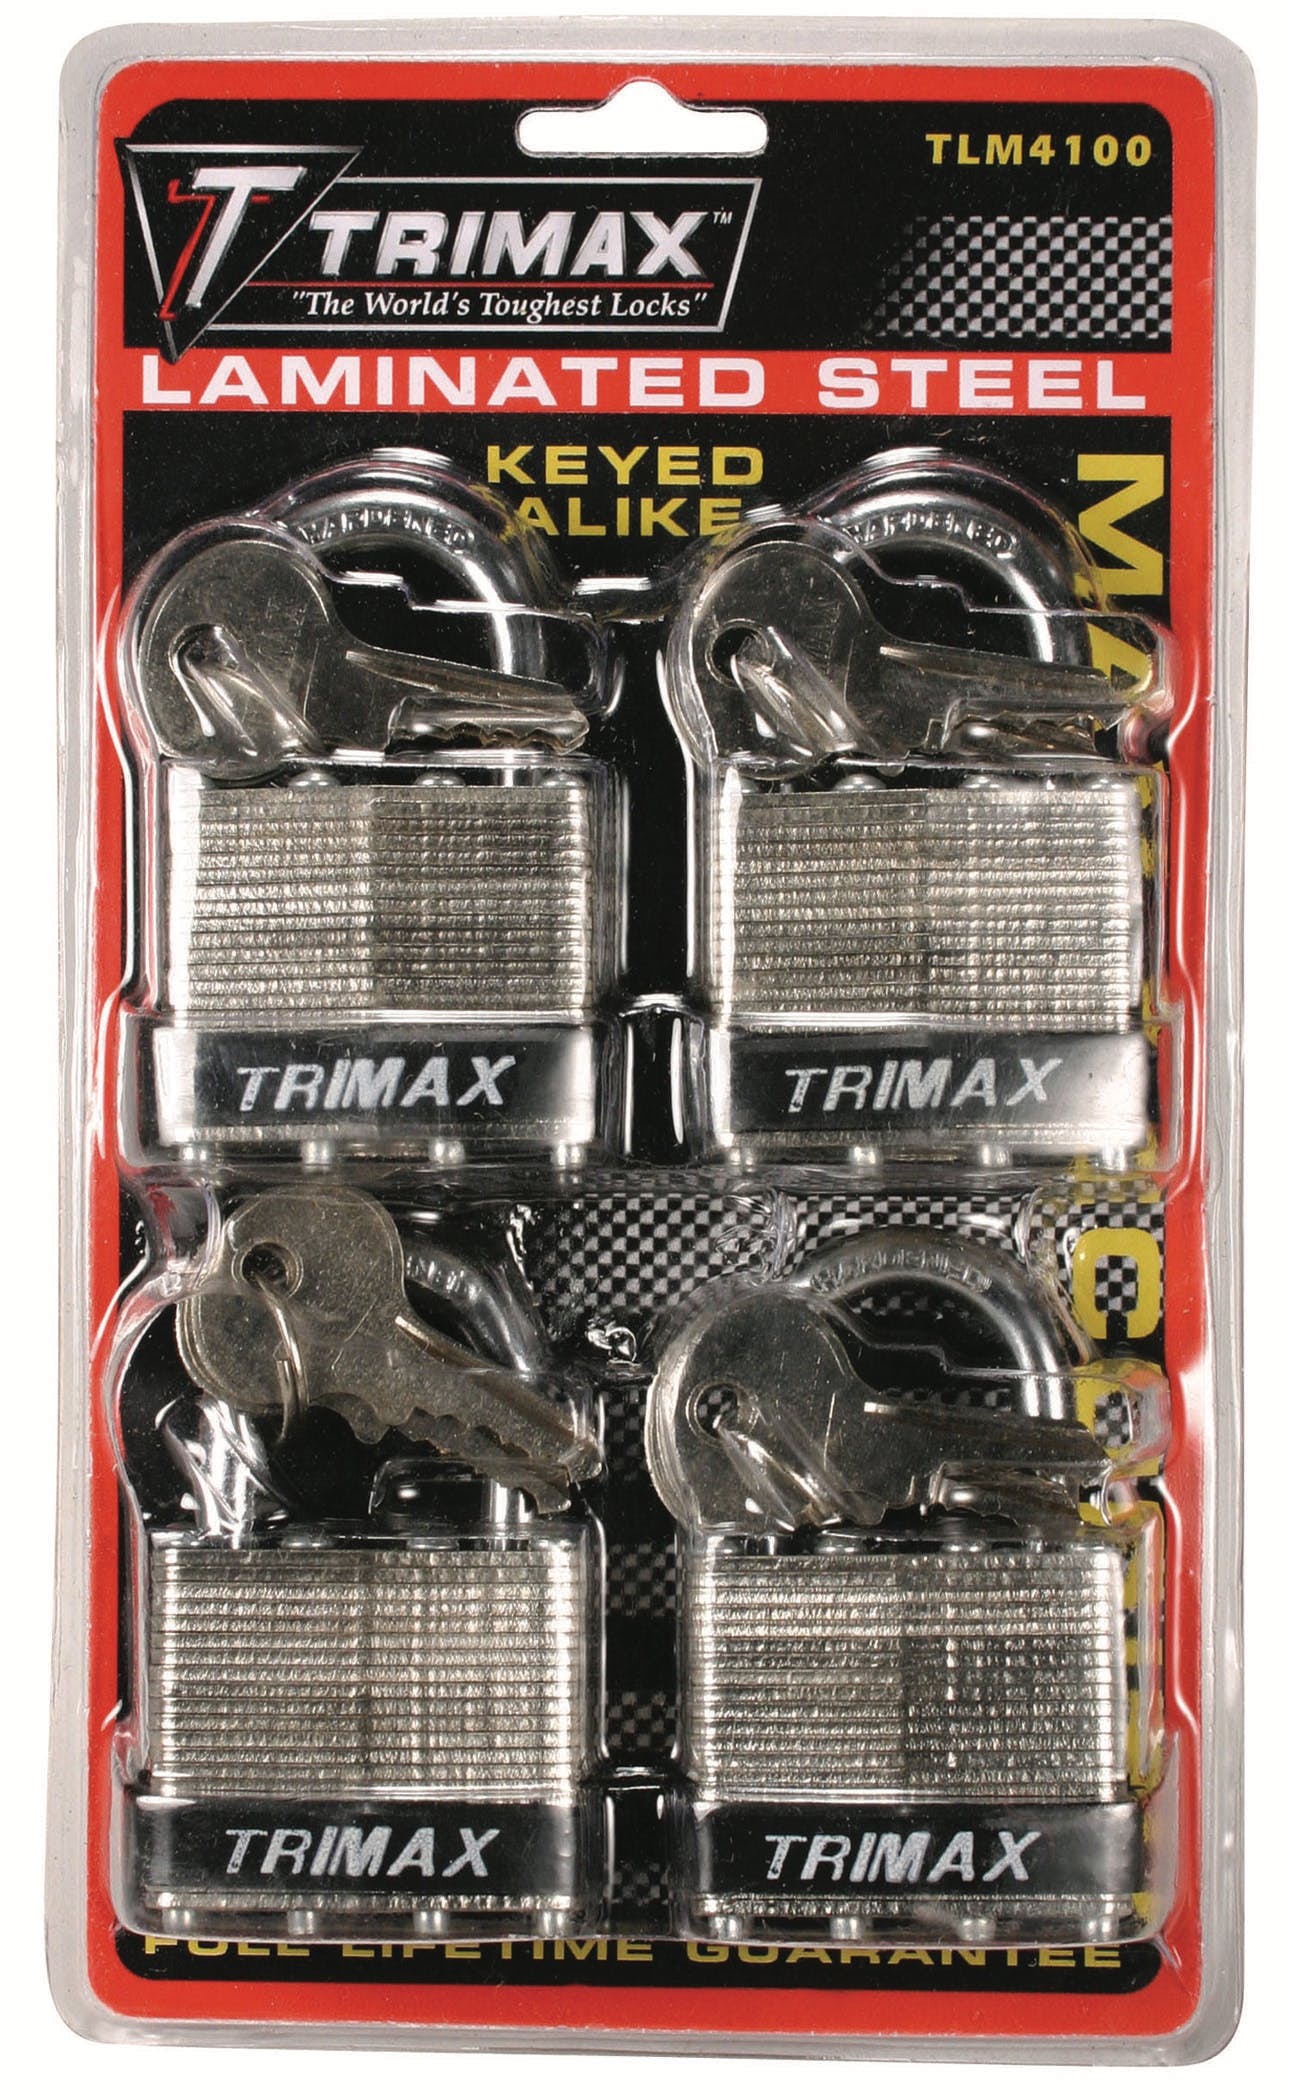 TRIMAX TLM4100 4-Pack Of Keyed Alike Tlm100 Padlocks